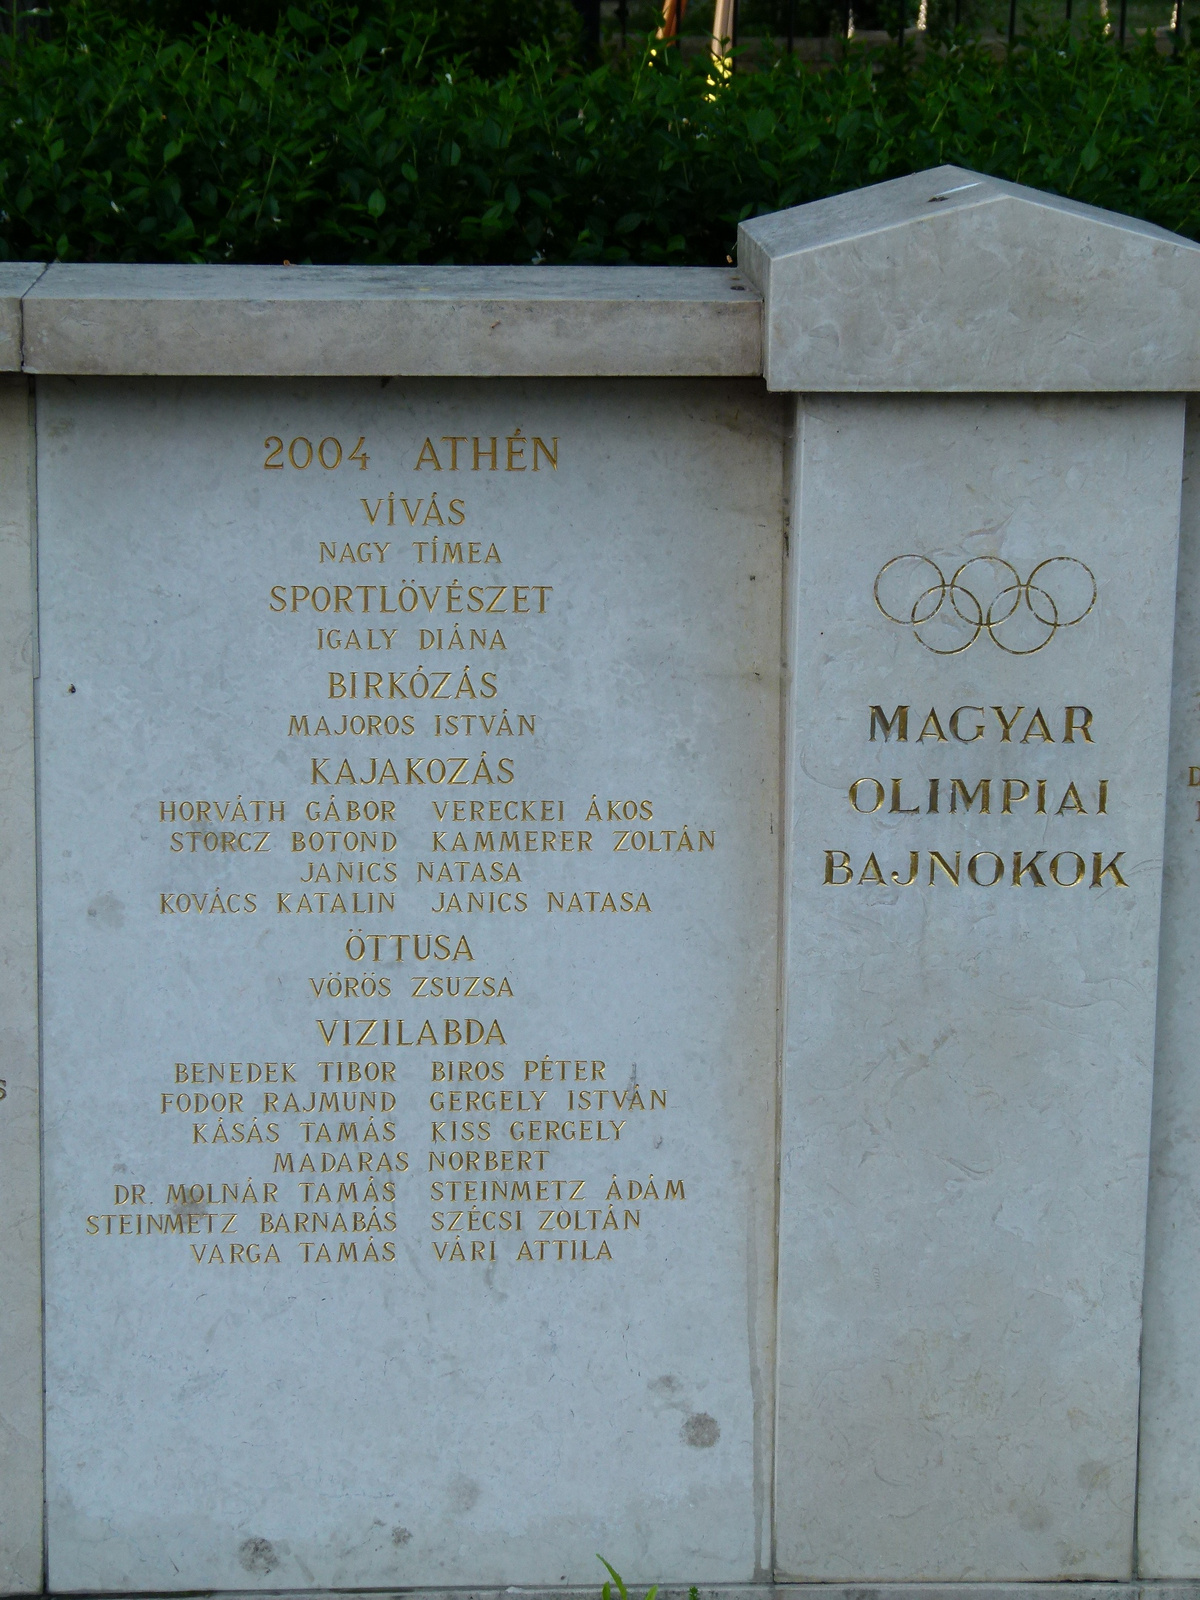 2004 Athén (P1140810)